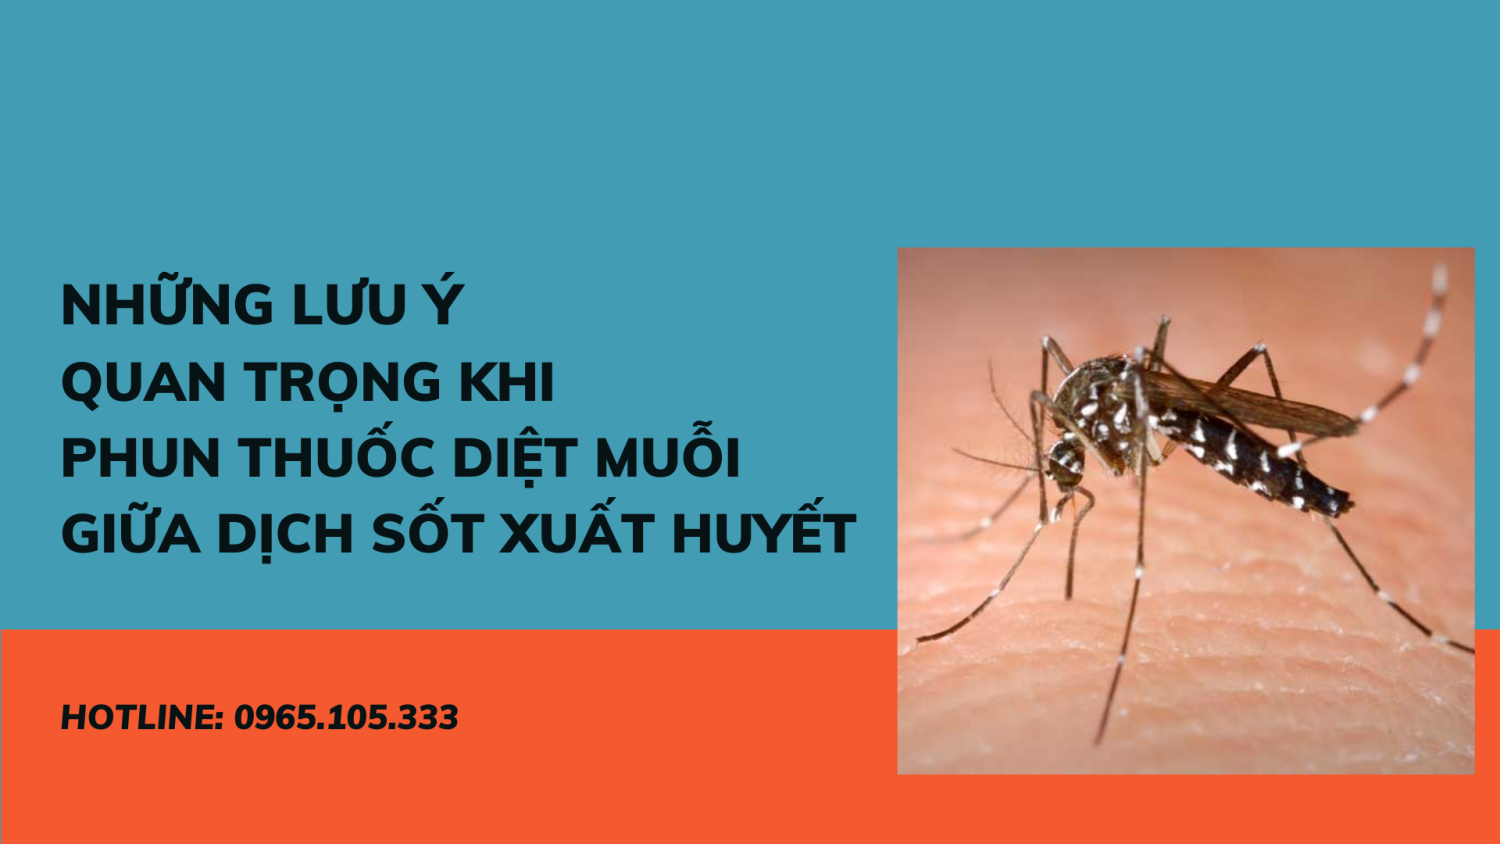 Những lưu ý quan trọng khi phun thuốc diệt muỗi giữa dịch sốt xuất huyết